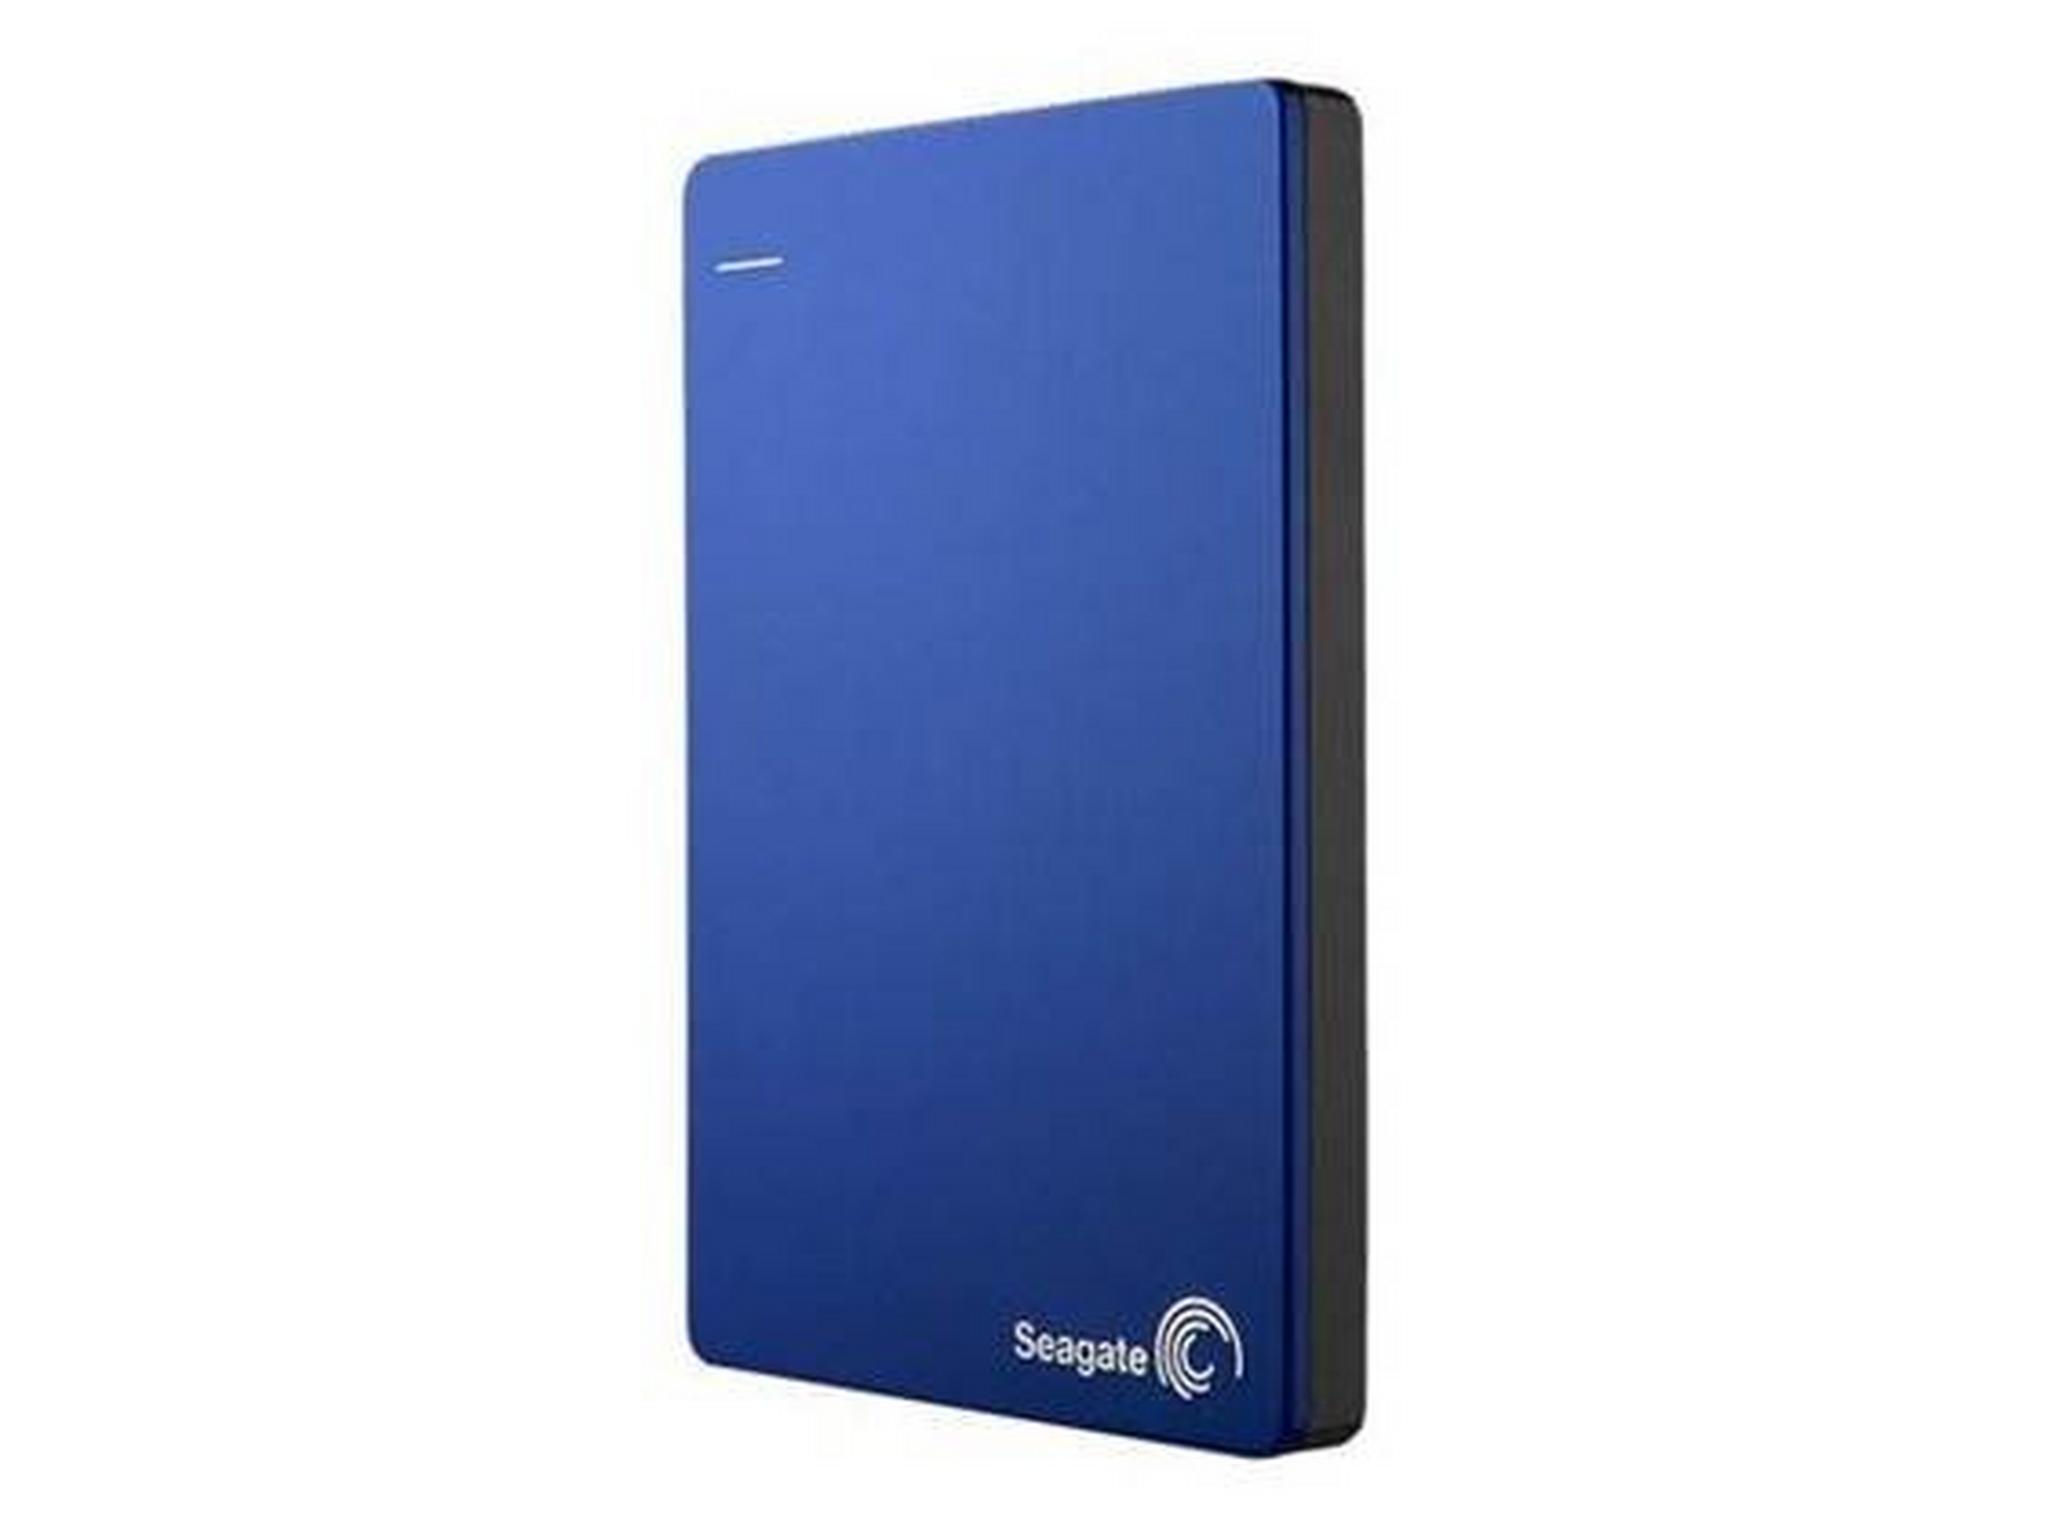 Seagate Hard Drive 2TB HDD - Blue - STDR2000202